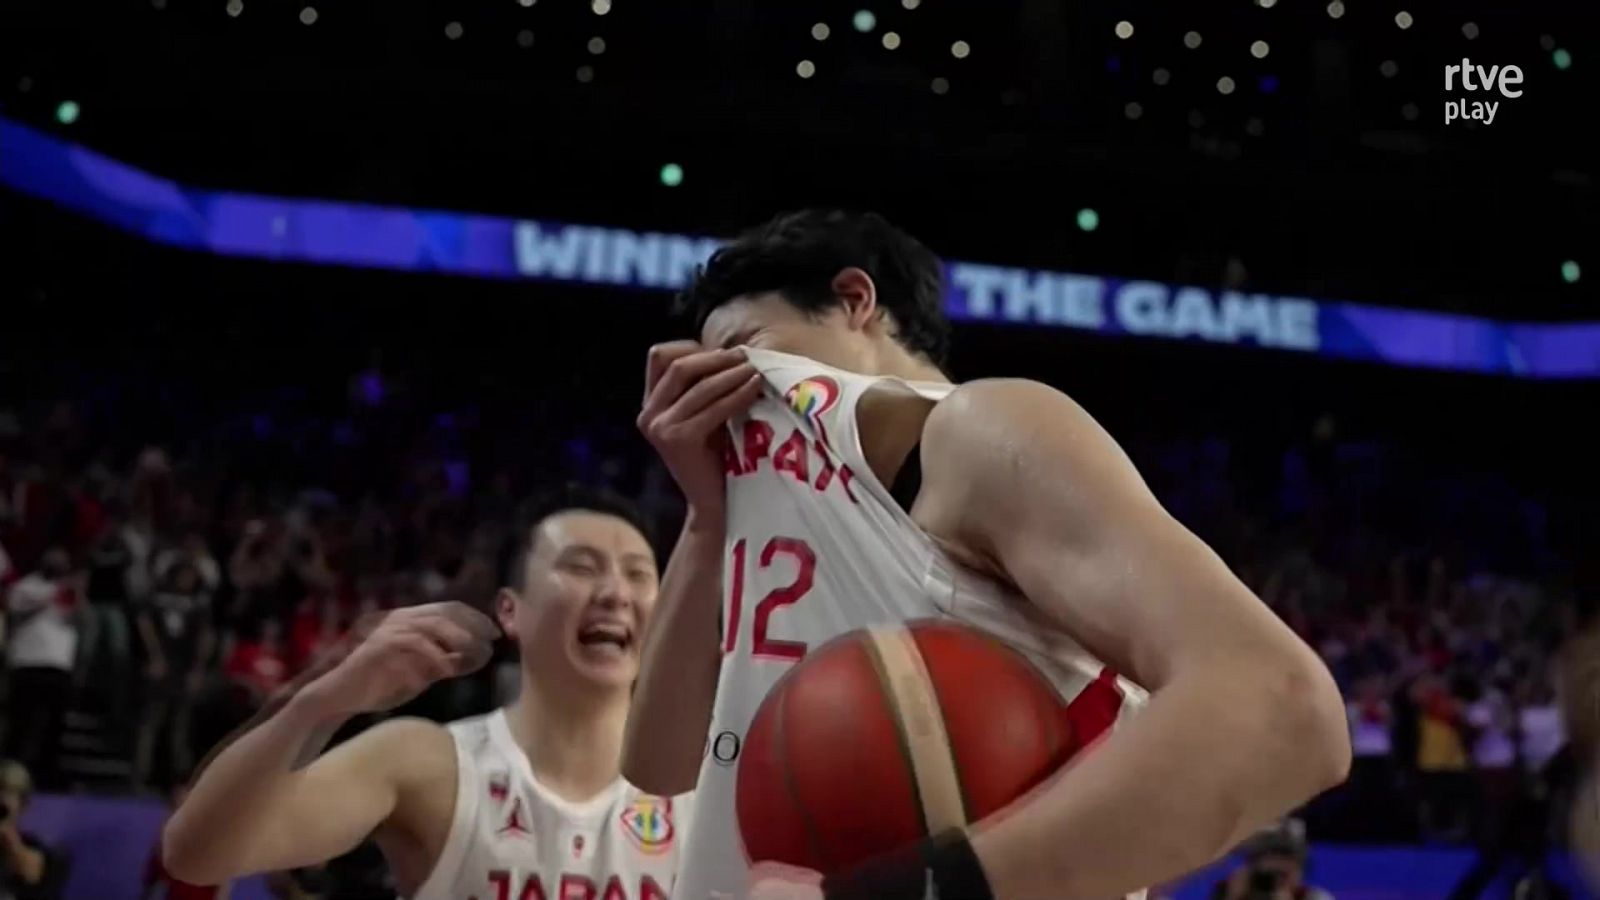 Mundial baloncesto 2023 | Yuta Watanabe rompe a llorar tras conocer que Japón está clasificada para los JJOO